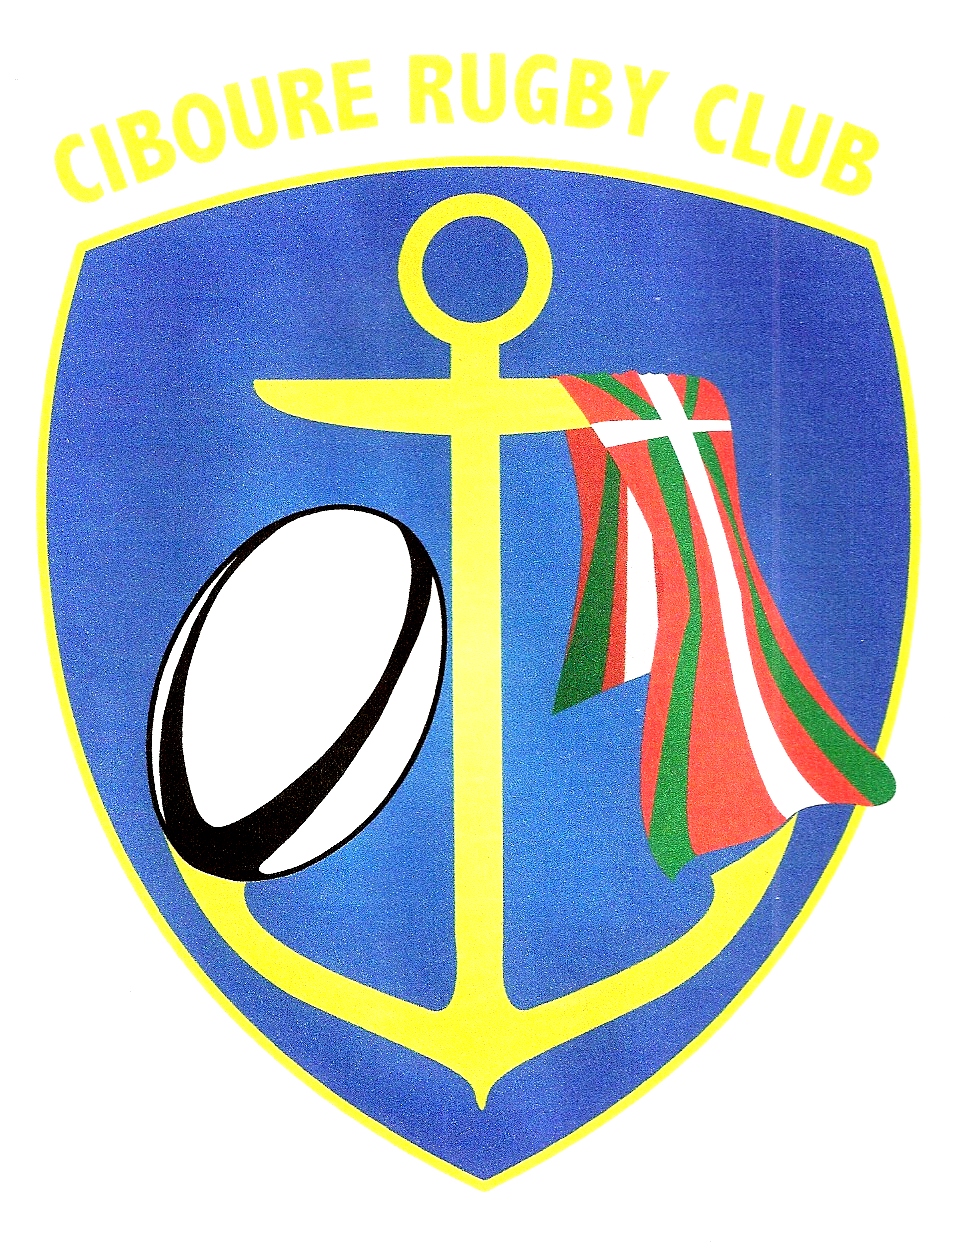 ciboure-rugby-club-logo-620b73a217f19395477479.jpg